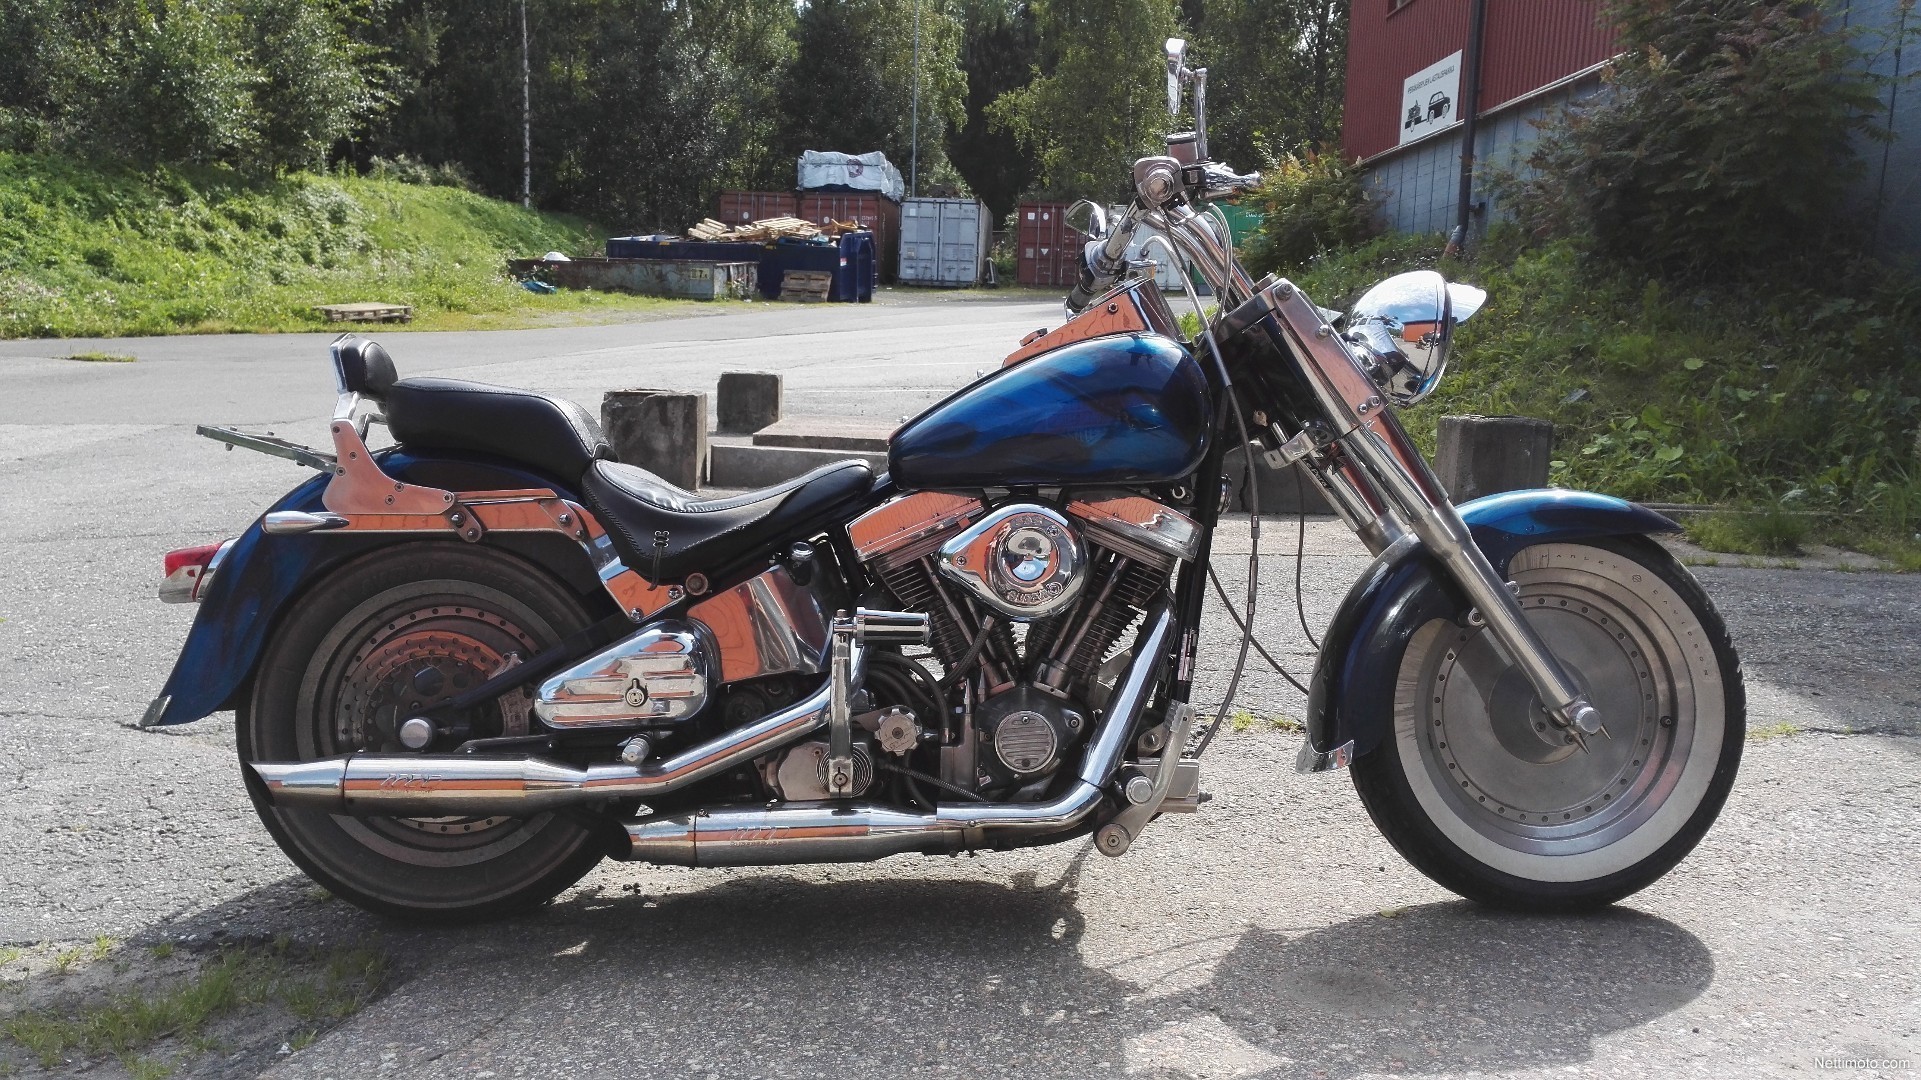  Harley Davidson Softail FXST Softail Fat boy 1 400 cm 